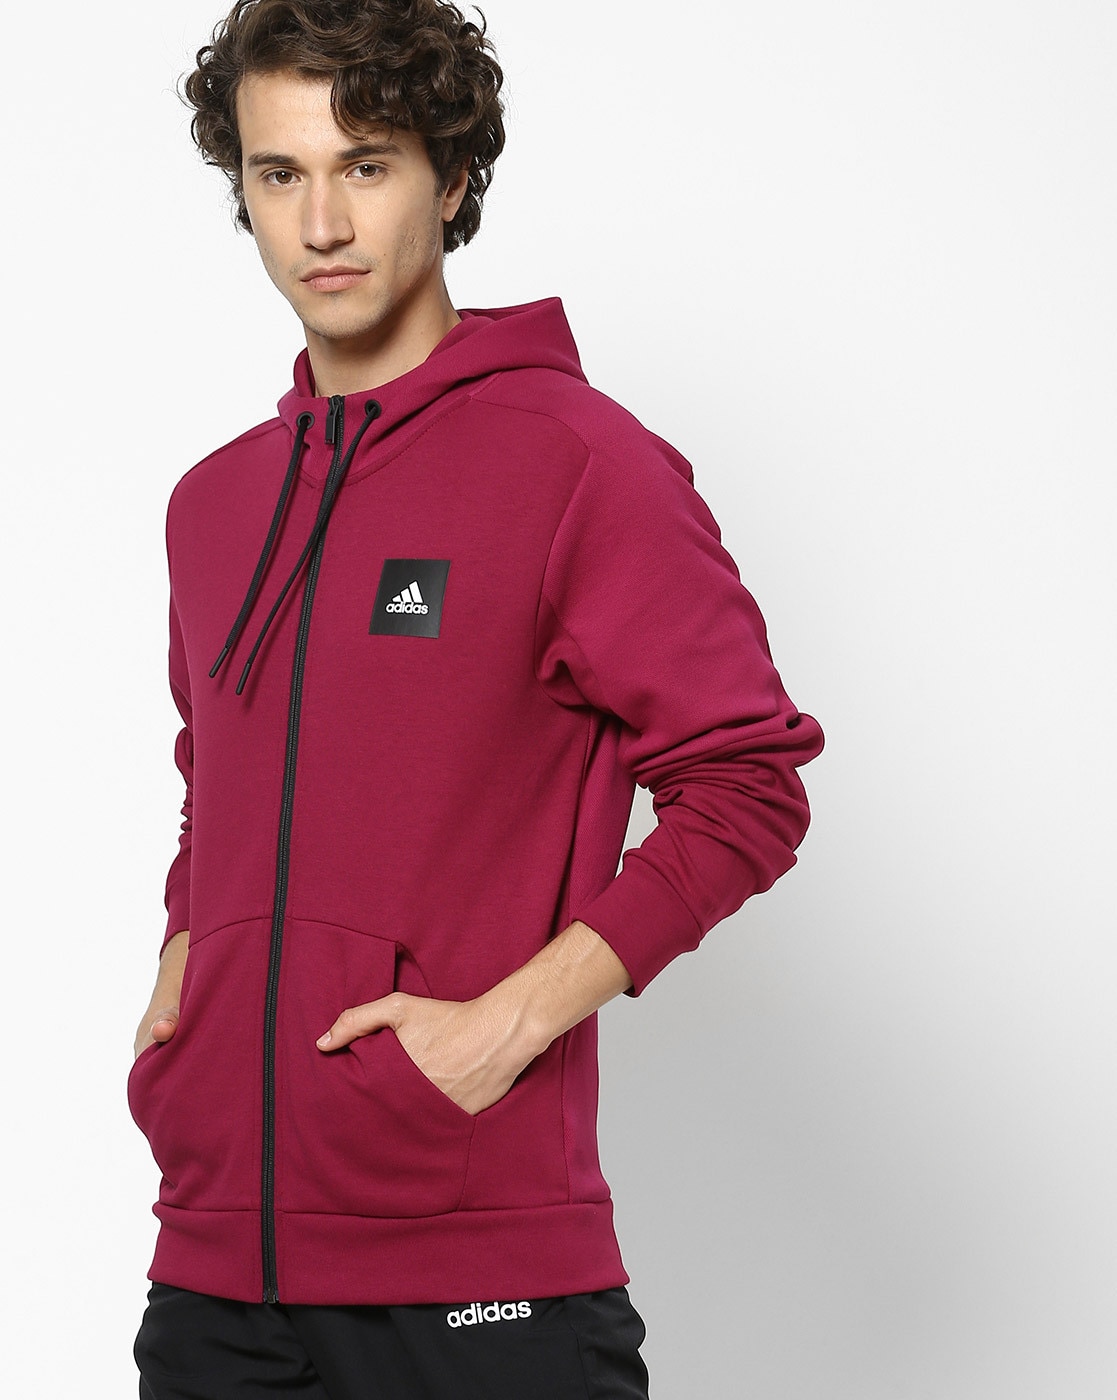 adidas burgundy hoodie